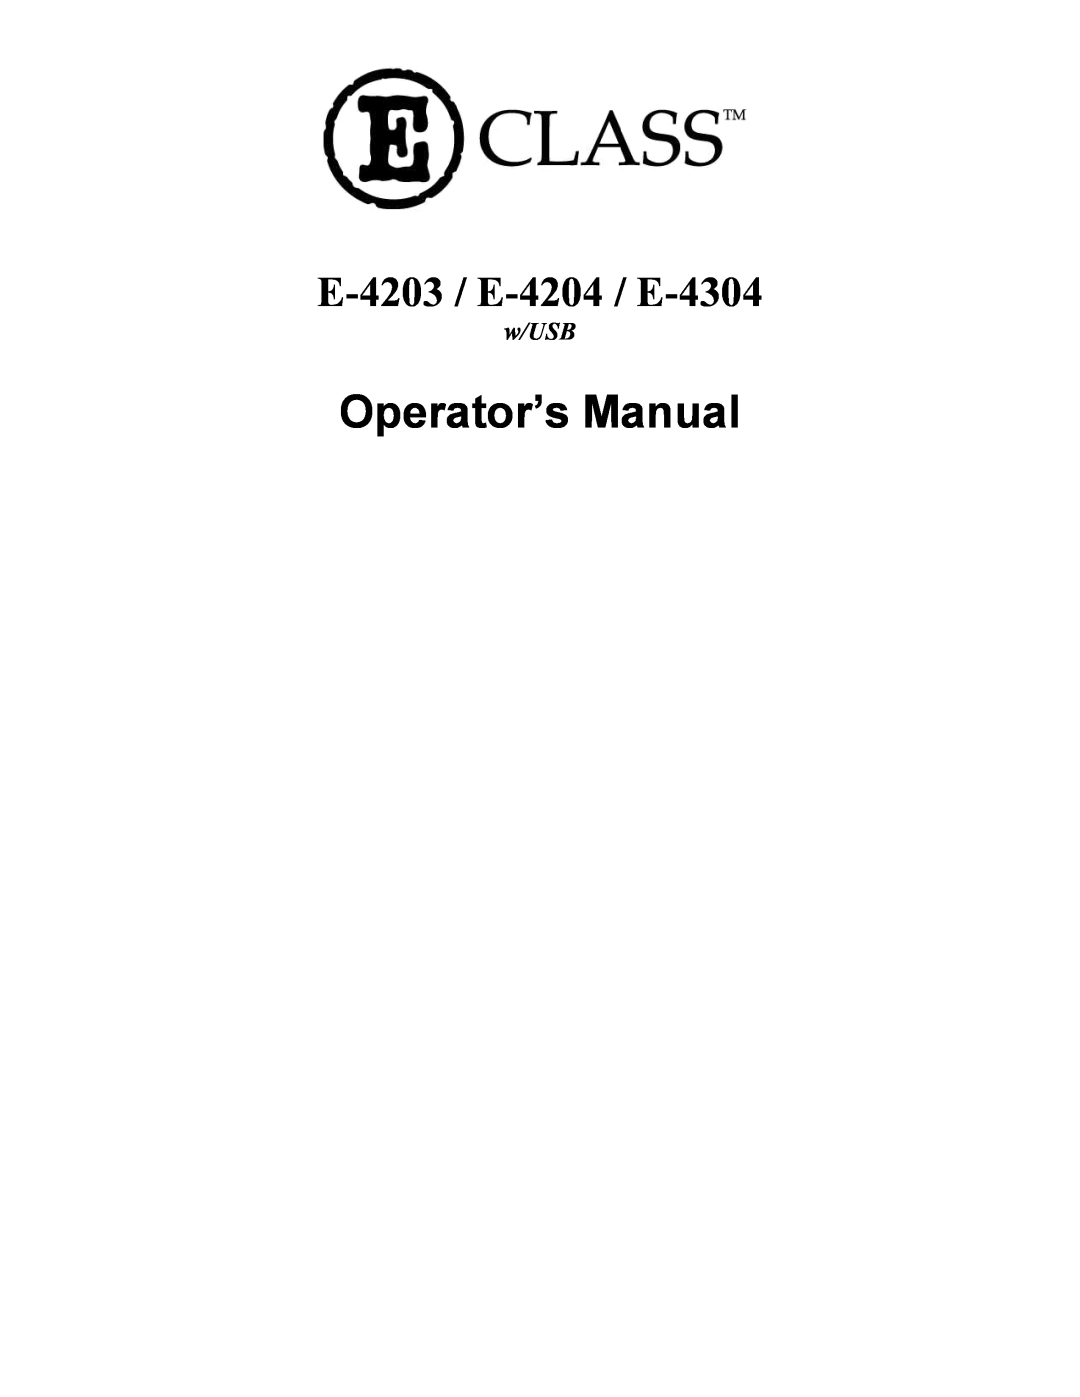 Datamax E-4304e manual Operator’s Manual, E-4203 / E-4204 / E-4304, w/USB 